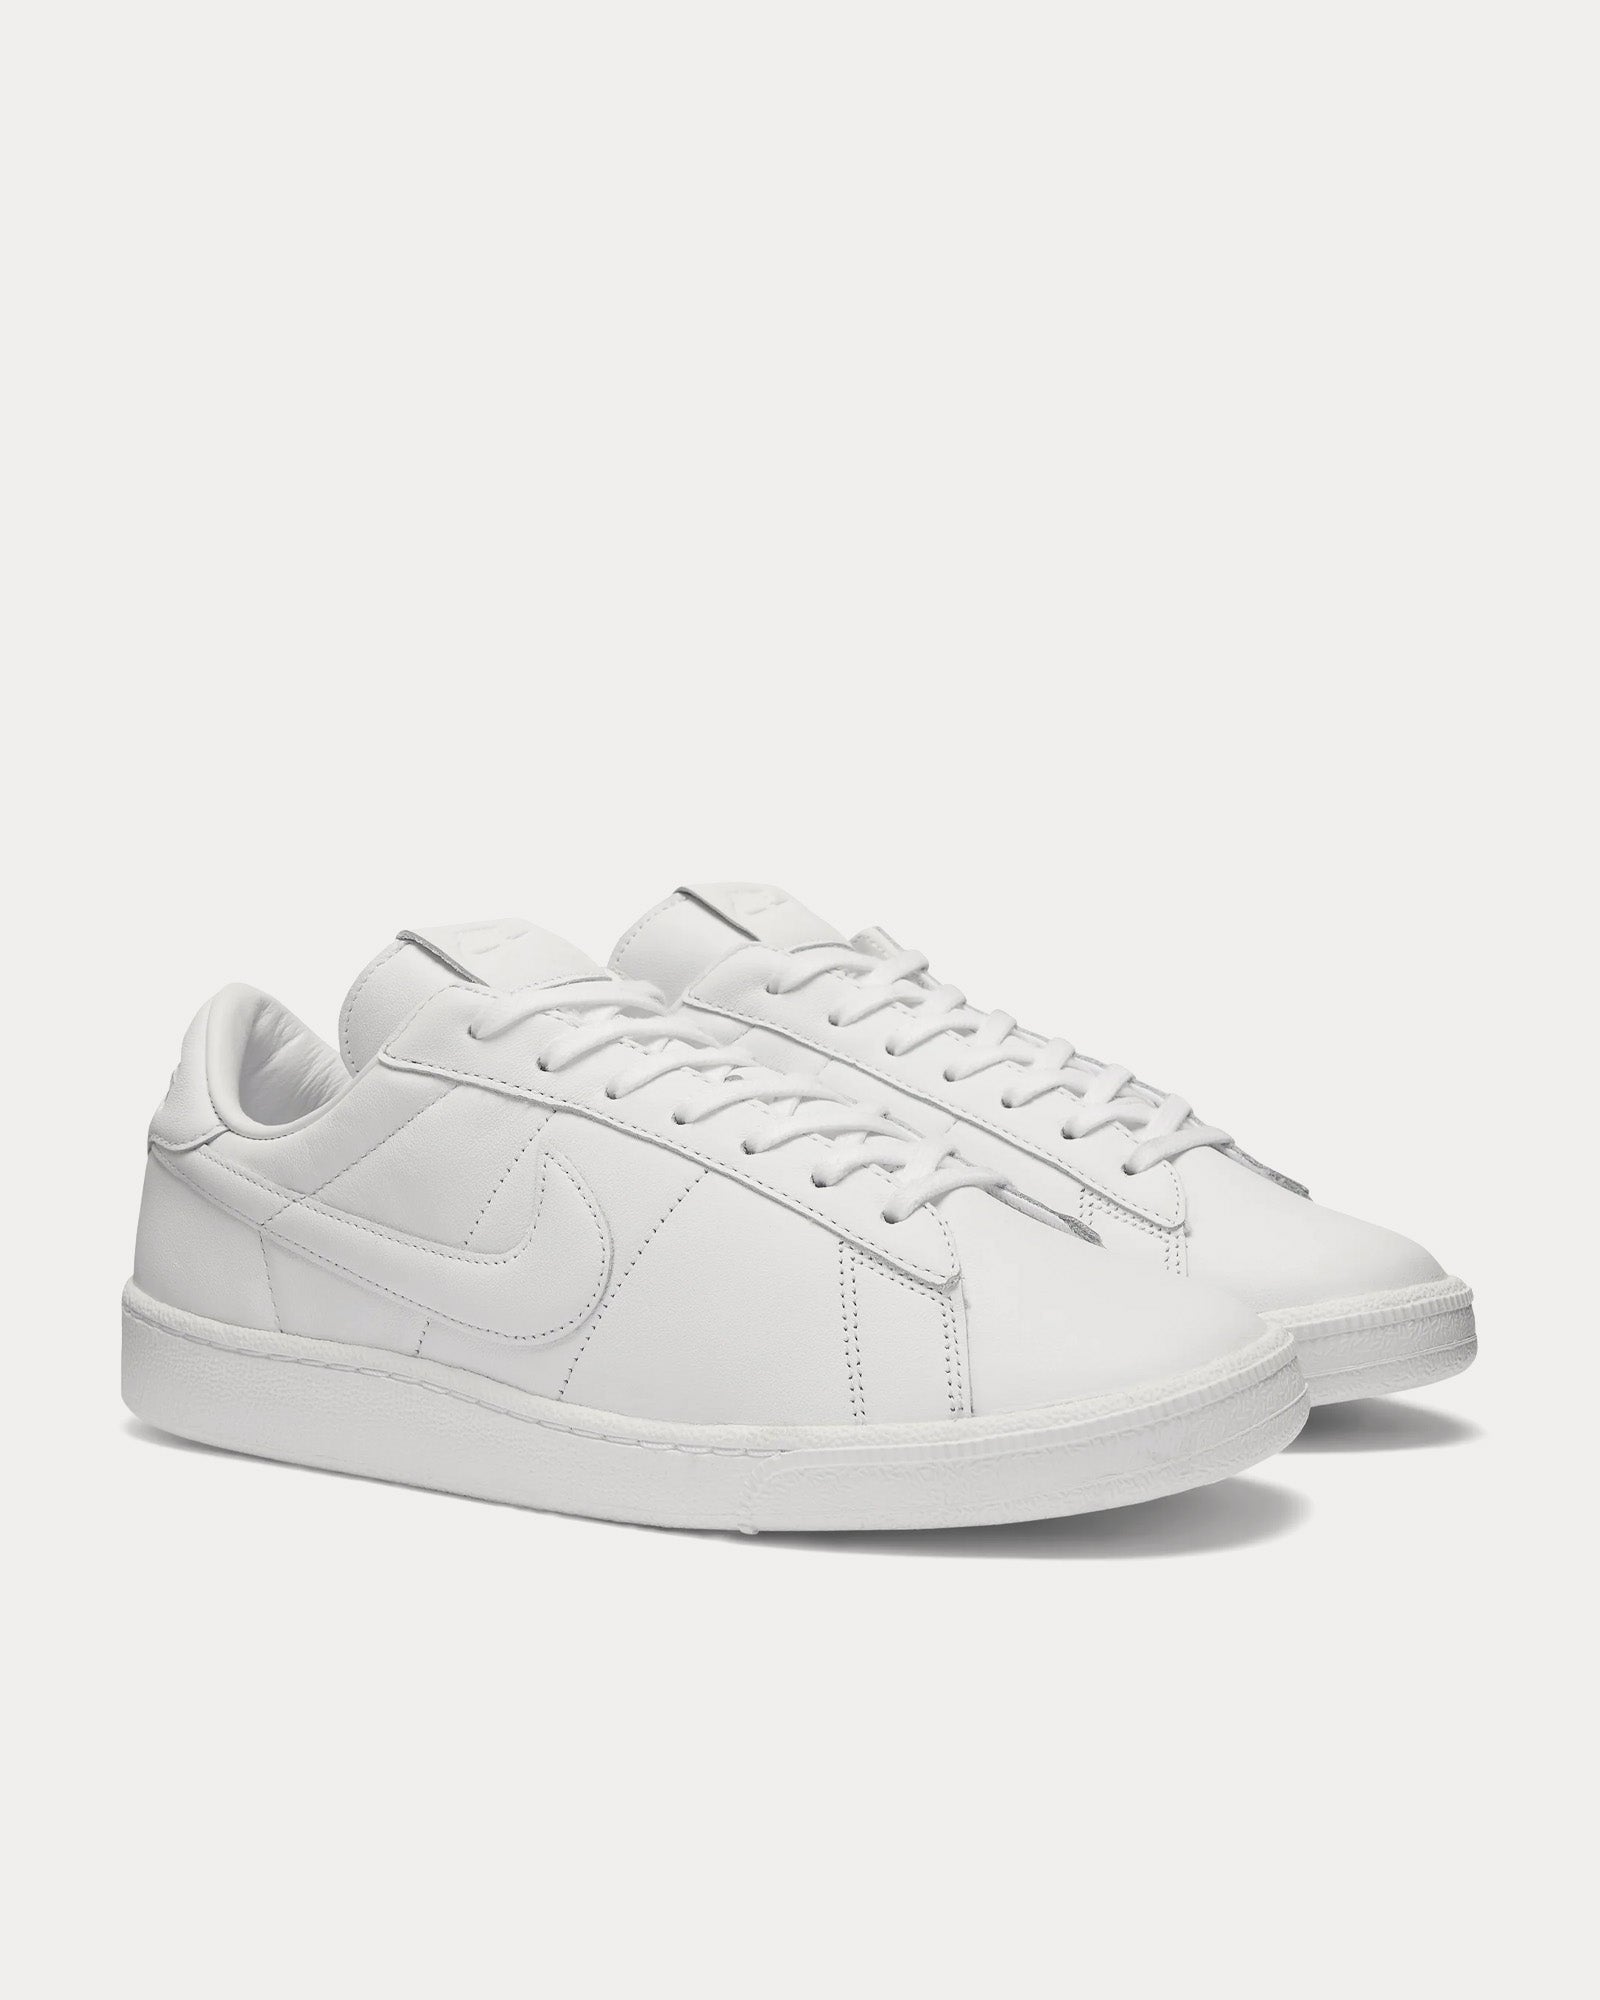 Nike x Comme des Garçons - Tennis Classic SP White Low Top Sneakers